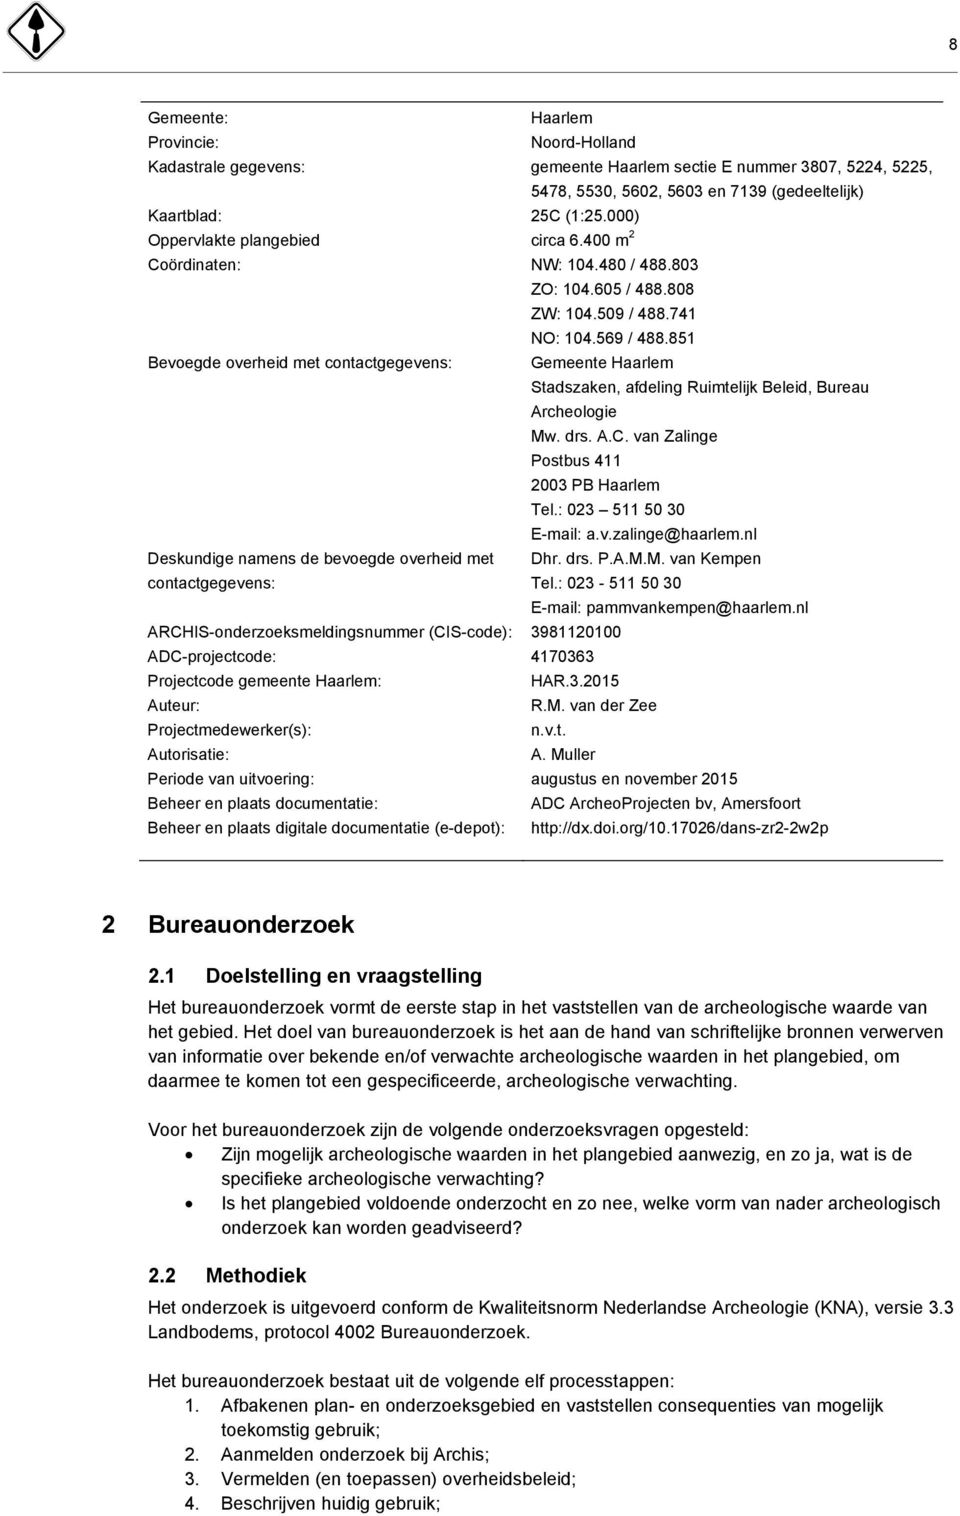 851 Bevoegde overheid met contactgegevens: Gemeente Haarlem Stadszaken, afdeling Ruimtelijk Beleid, Bureau Archeologie Mw. drs. A.C. van Zalinge Postbus 411 2003 PB Haarlem Tel.